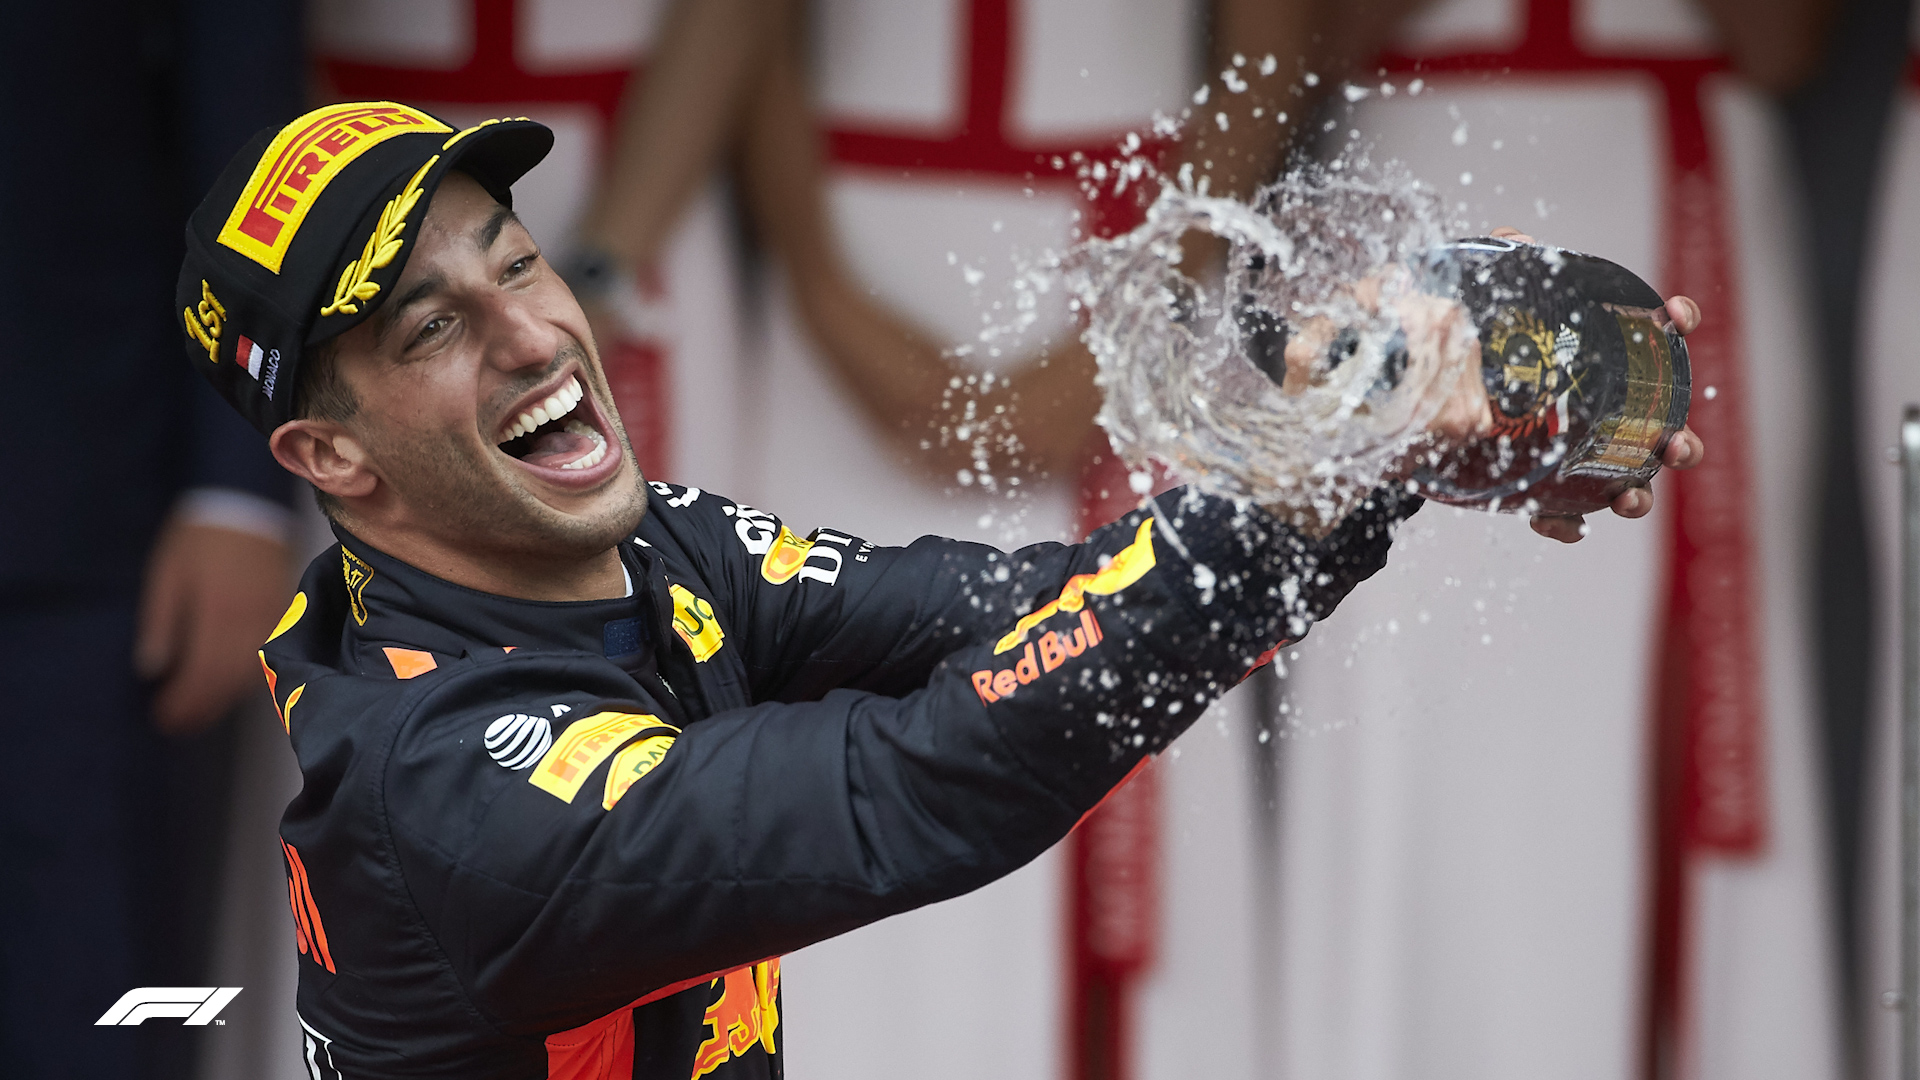 From Montreal to Monaco: Ranking Daniel Ricciardo’s 7 F1 victories so ...